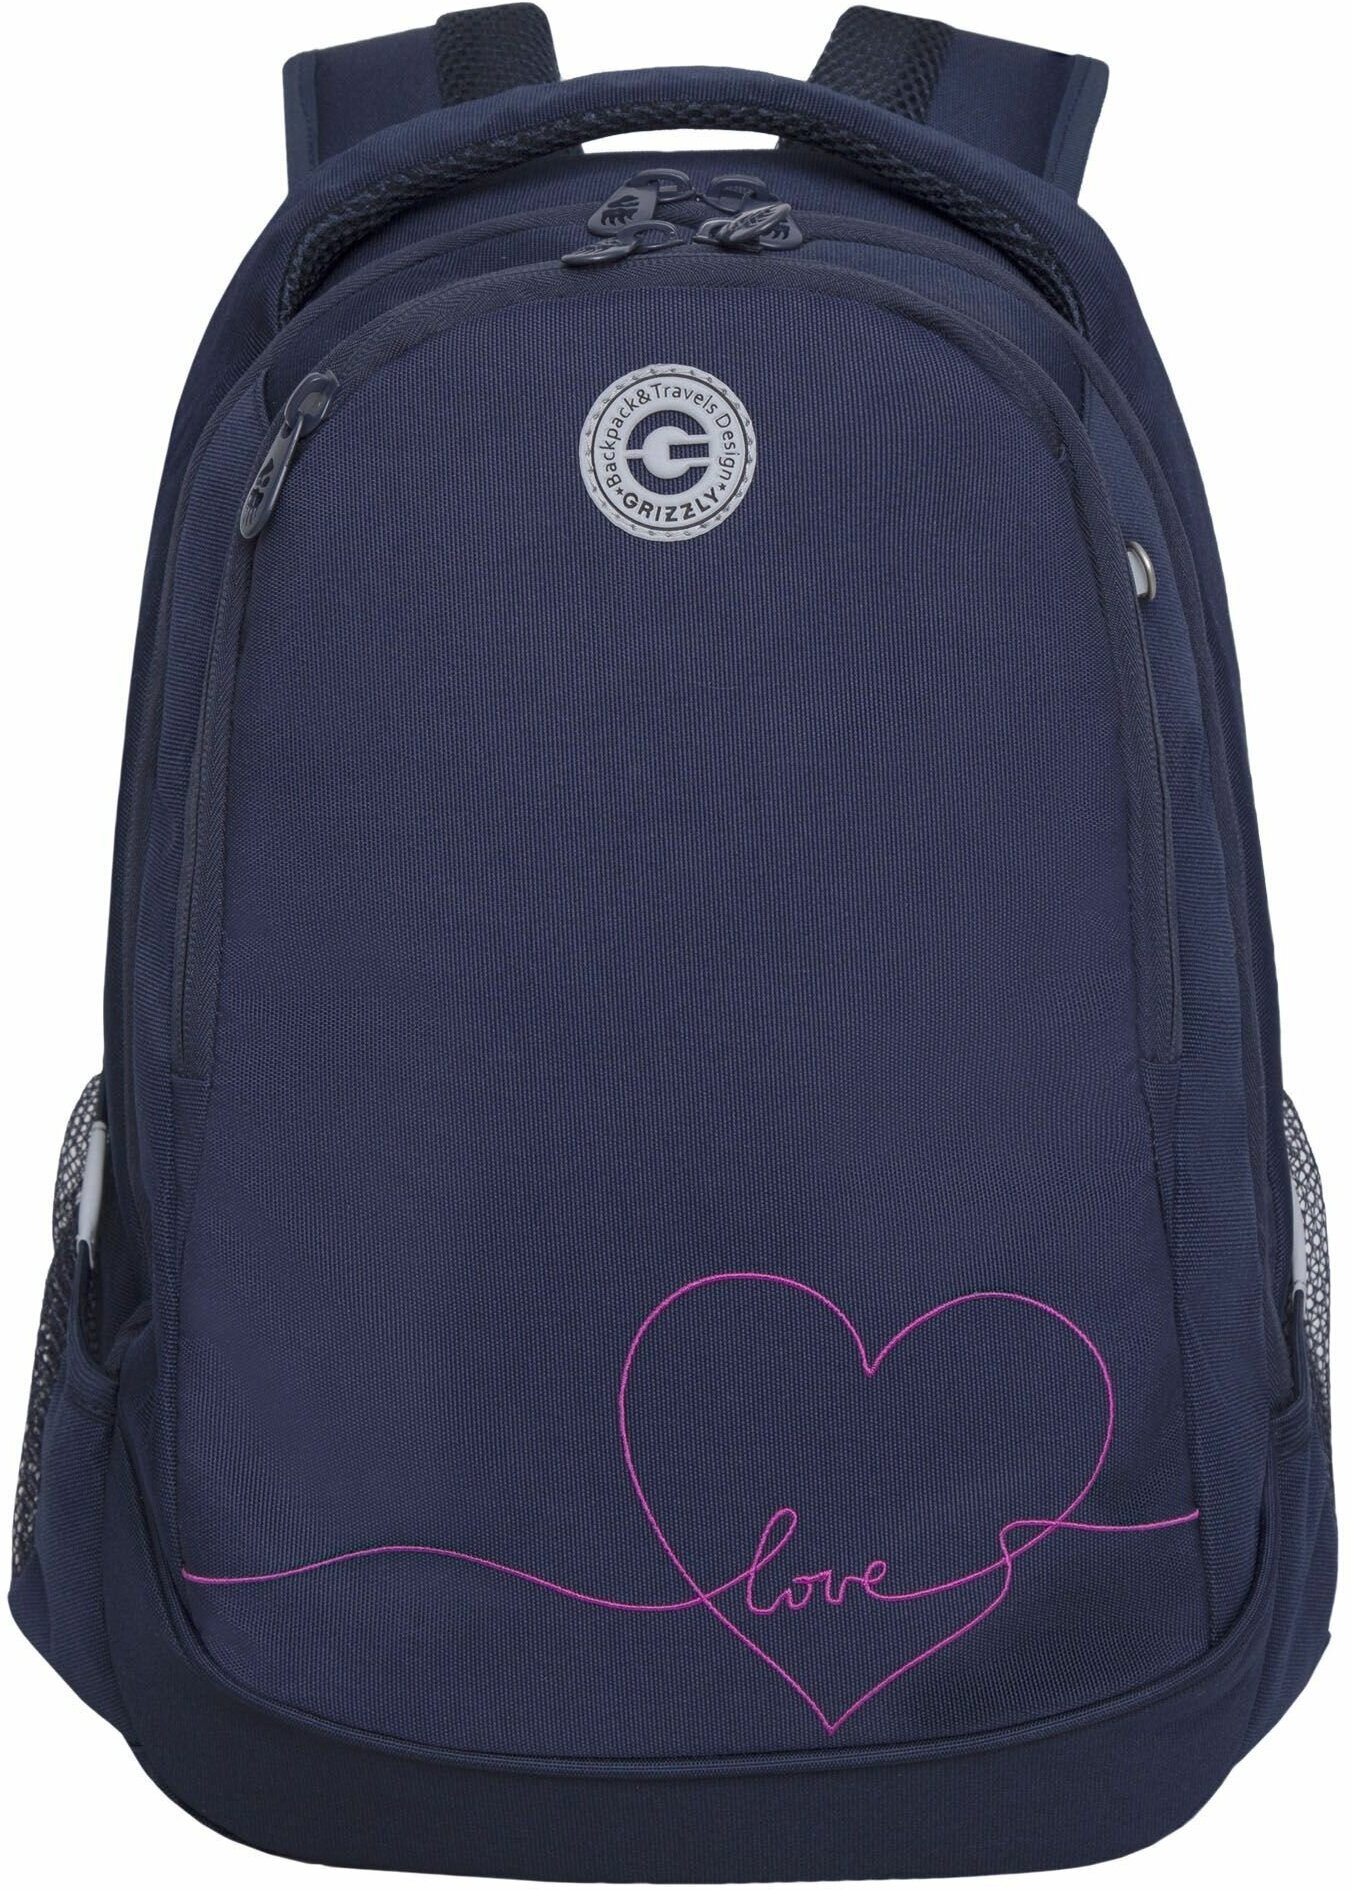 Рюкзак школьный для девочки подростка, с ортопедической спинкой, для средней школы, GRIZZLY (синий)